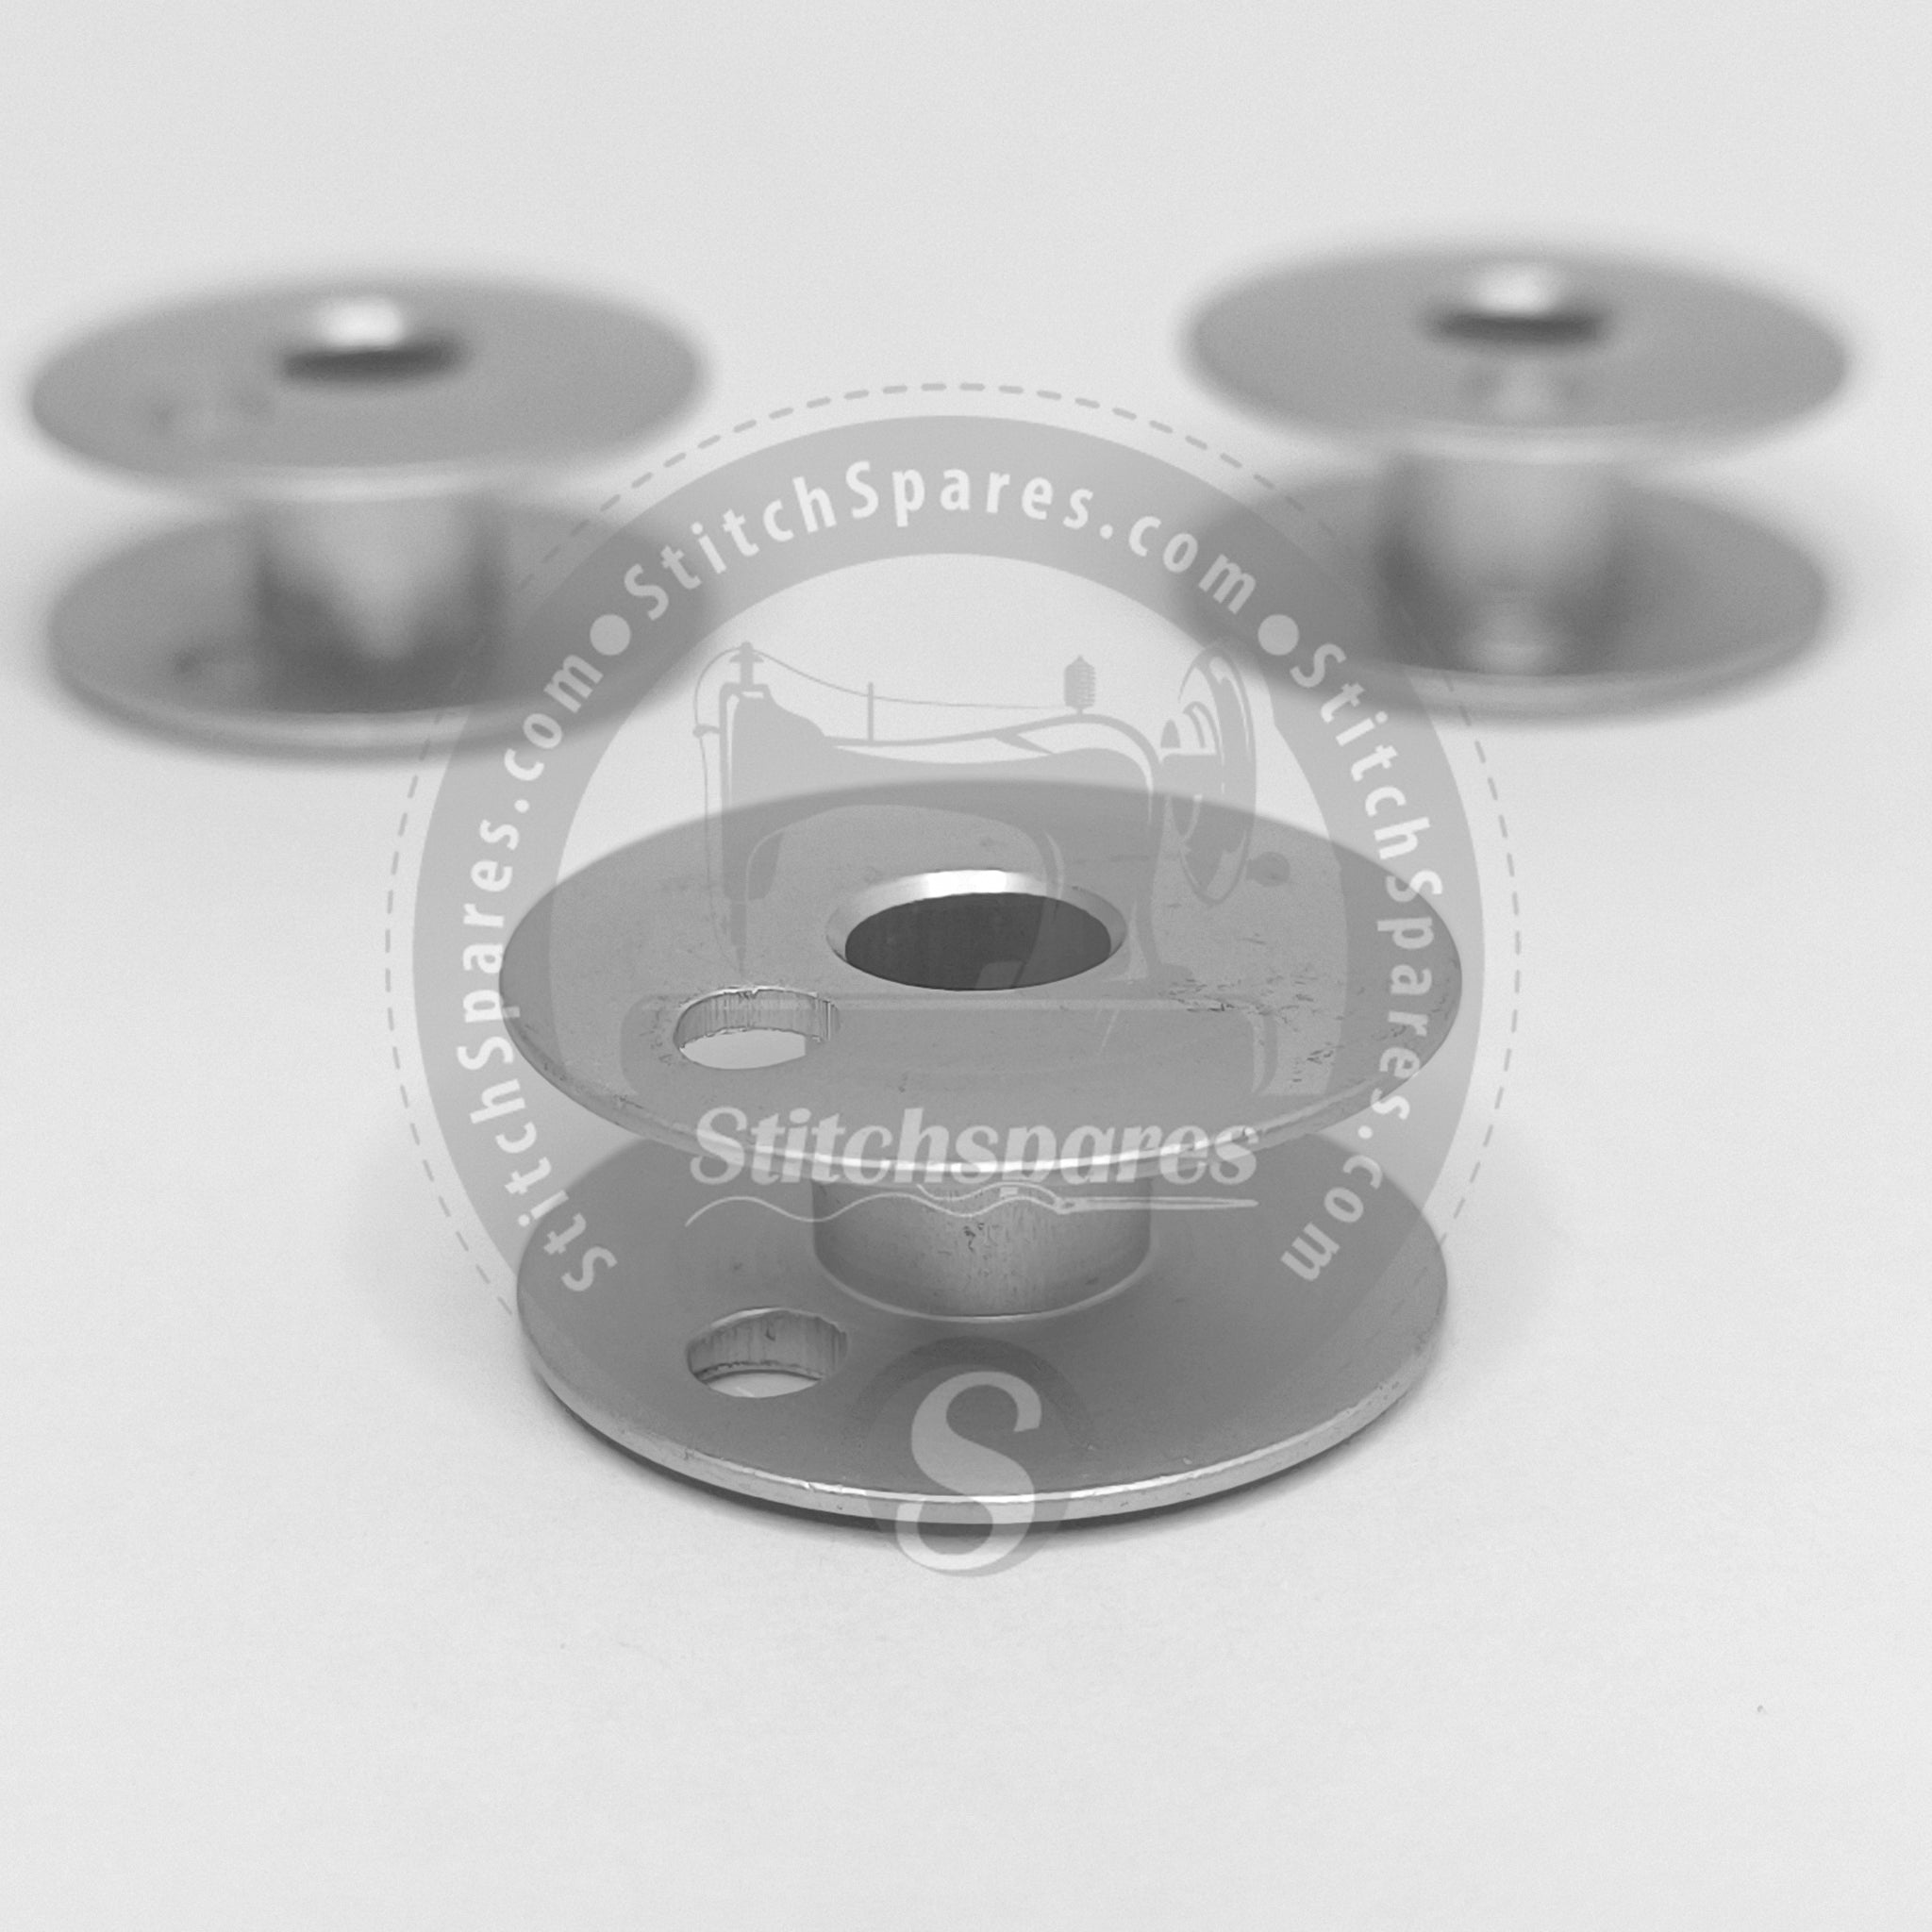 Bobbin small 21x6x9mm, metall, perforated for lockstitch machines -  B9117-012-000+ - Strima